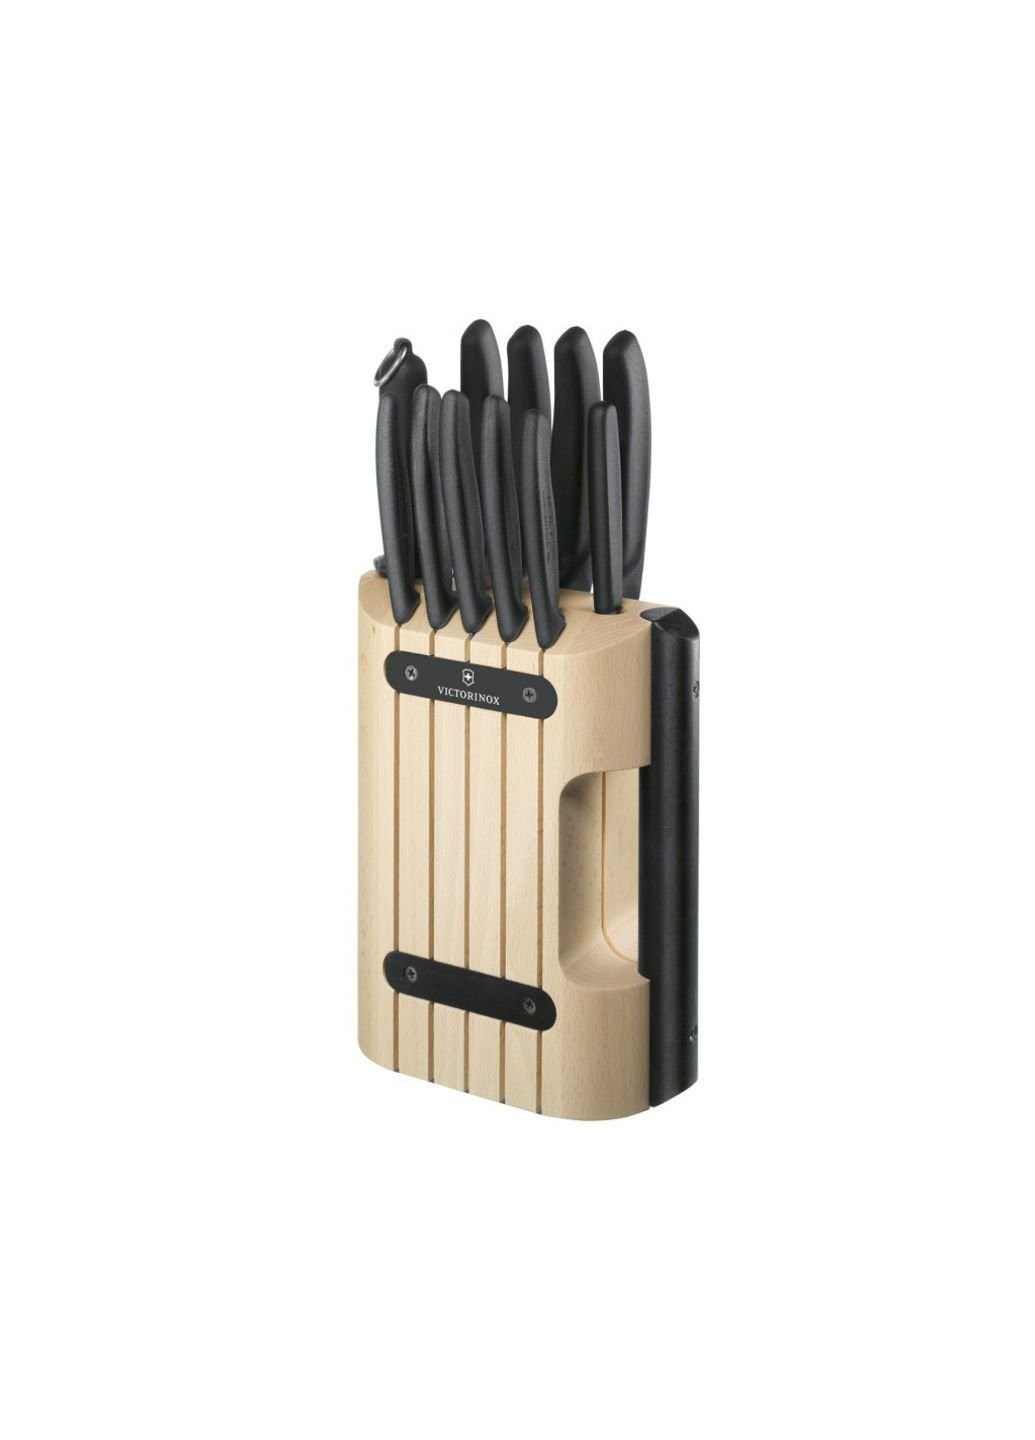 Набор ножей SwissClassic Cutlery Block 11 шт (6.7153.11) Victorinox чёрные,